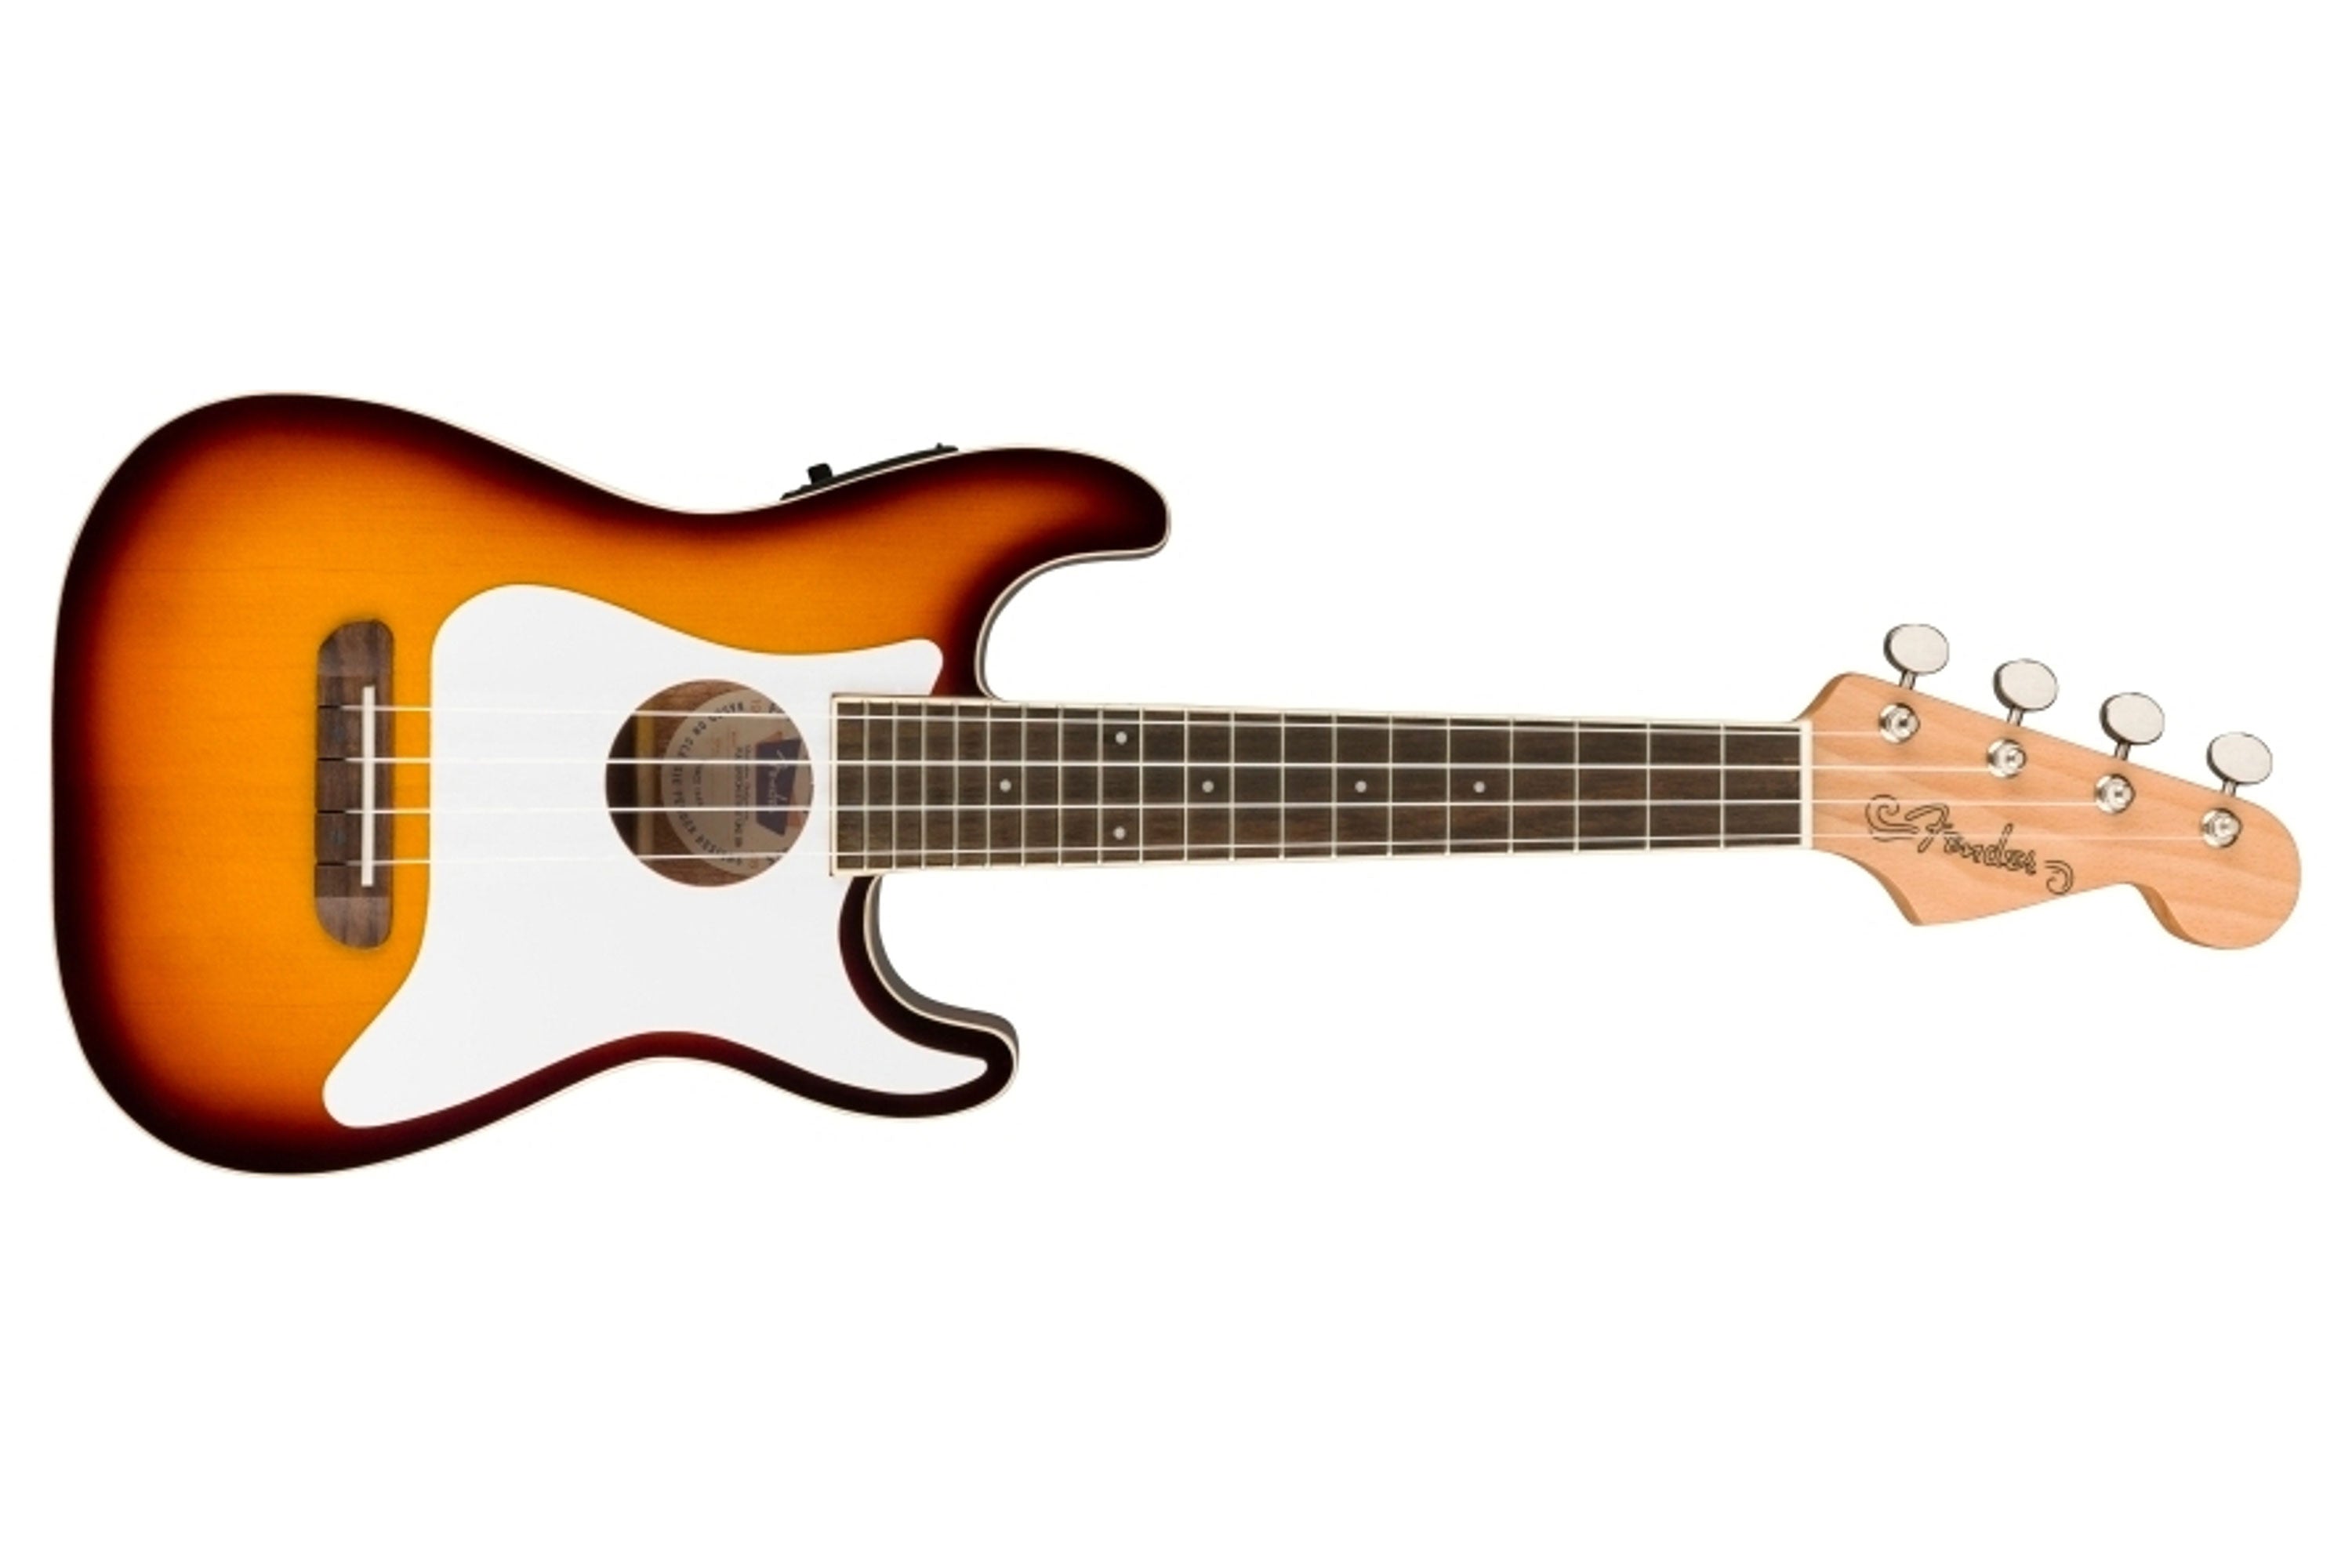 Fender Fullerton Stratocaster Ukulele